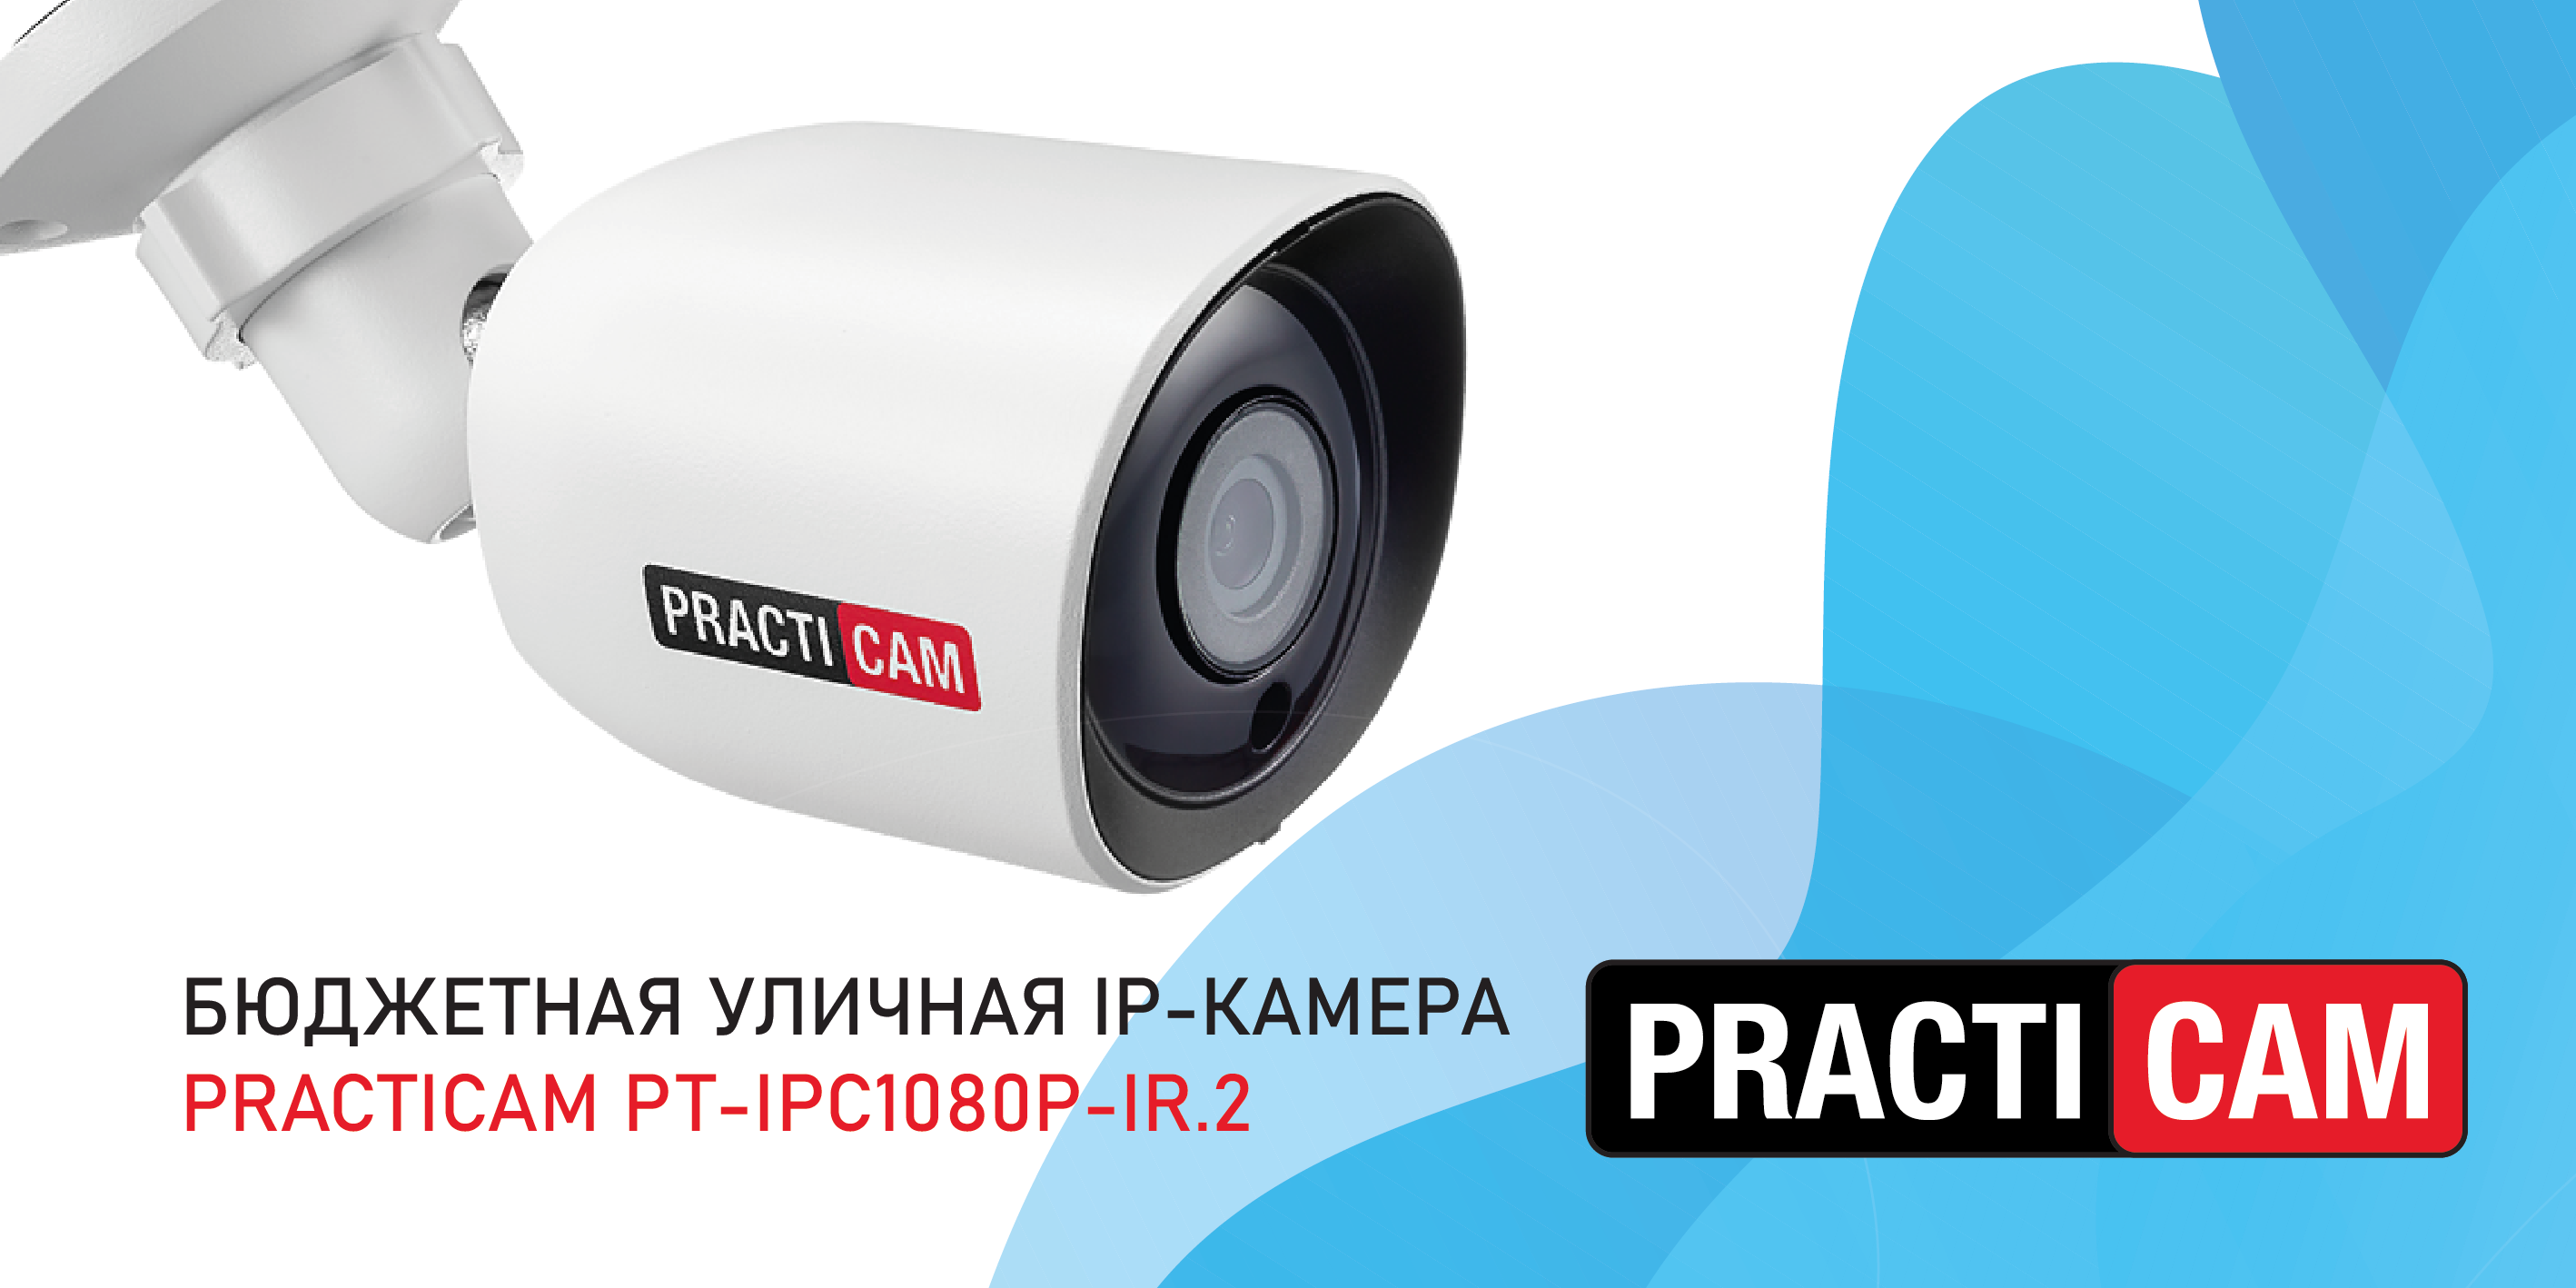 Бюджетная уличная IP-камера Practicam PT-IPC1080P-IR.2. Распаковка и установка microSD карты